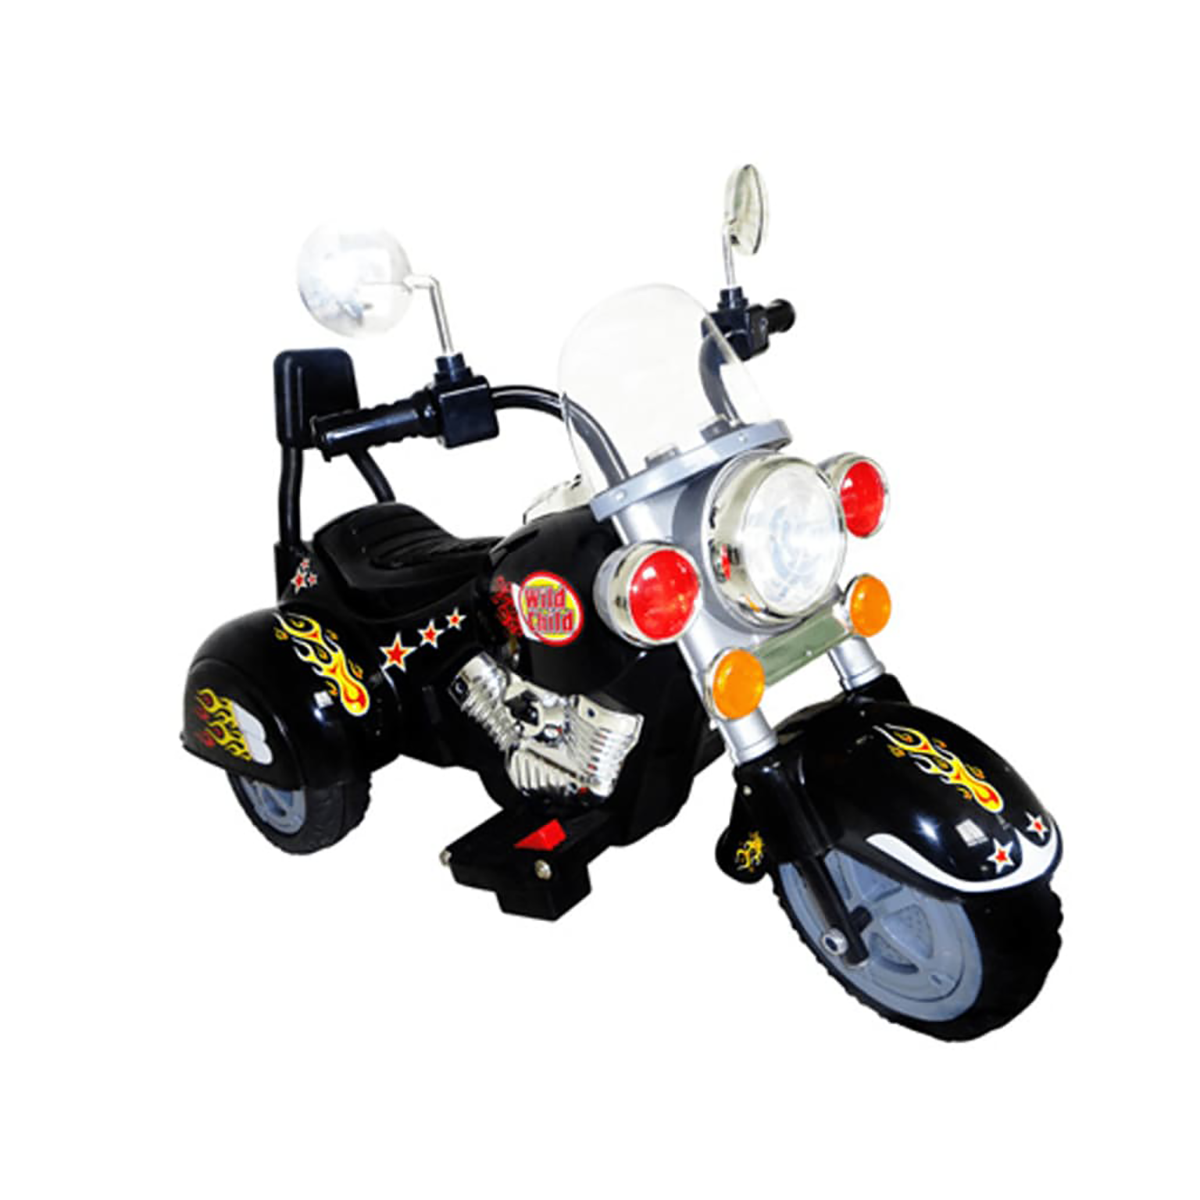 Kinder Kinderfahrzeug Chopper Motorrad VIDAXL